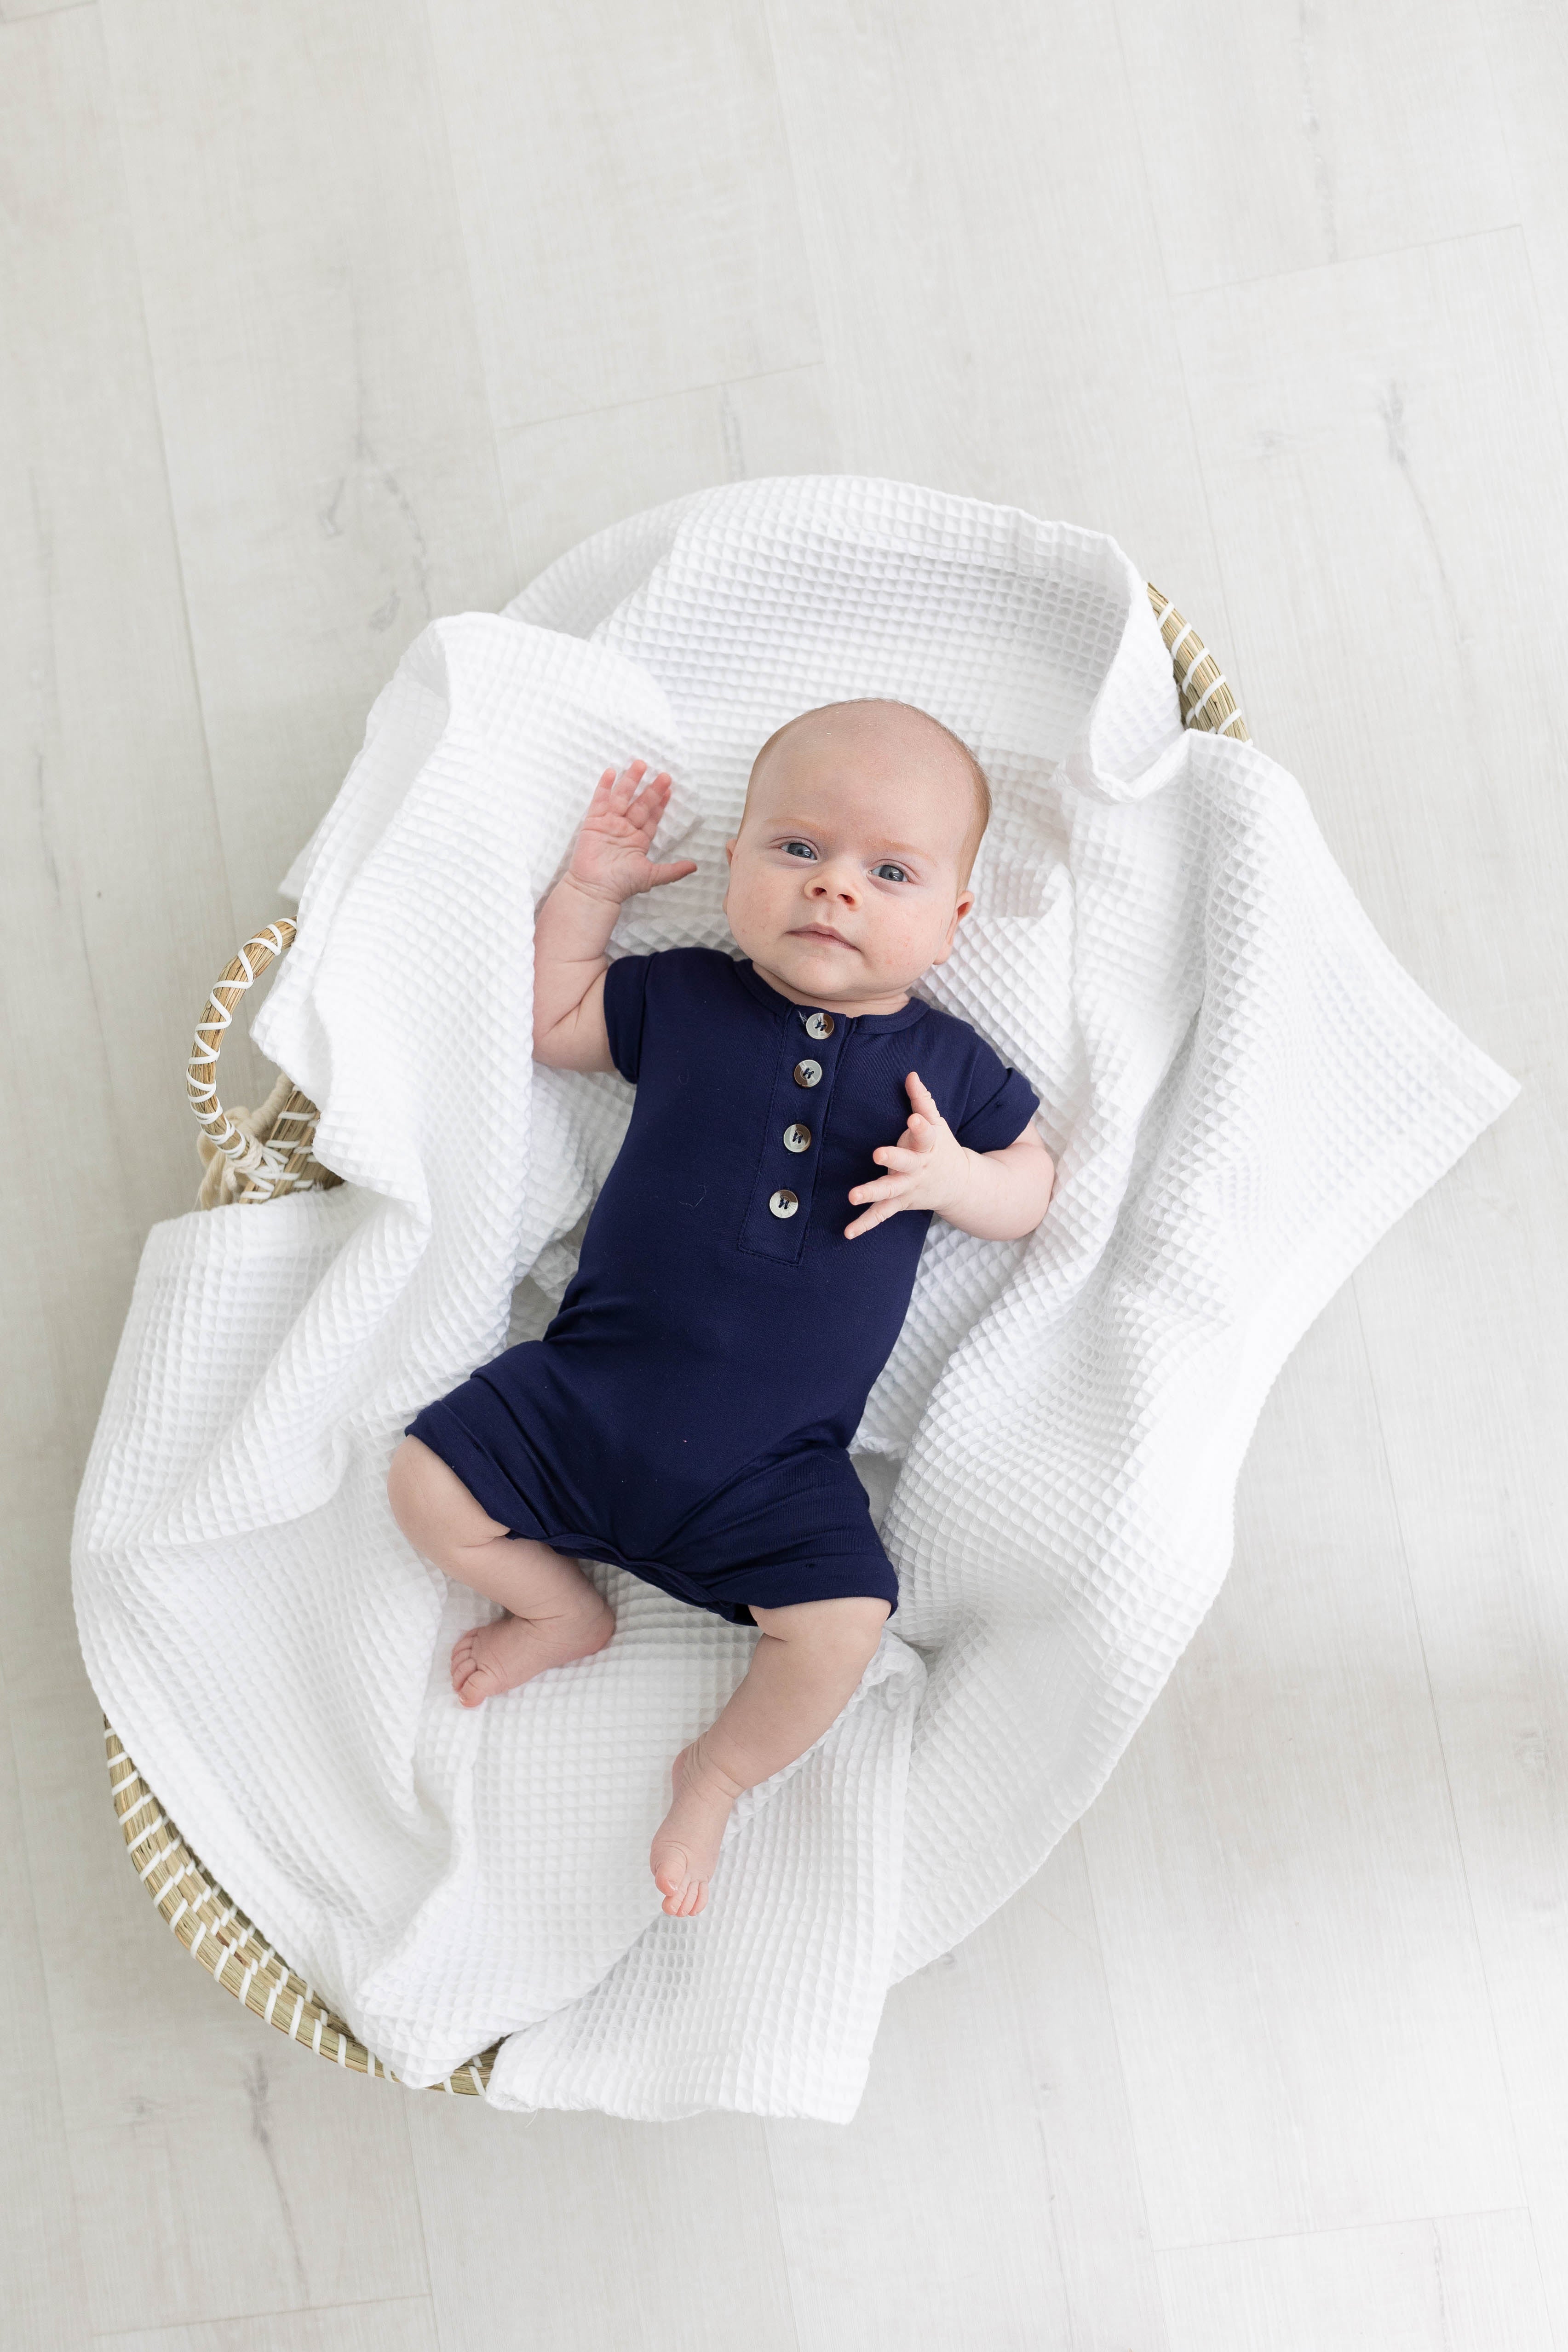 Baby Romper - (Newborn-12 months) White, Navy Blue, Pink